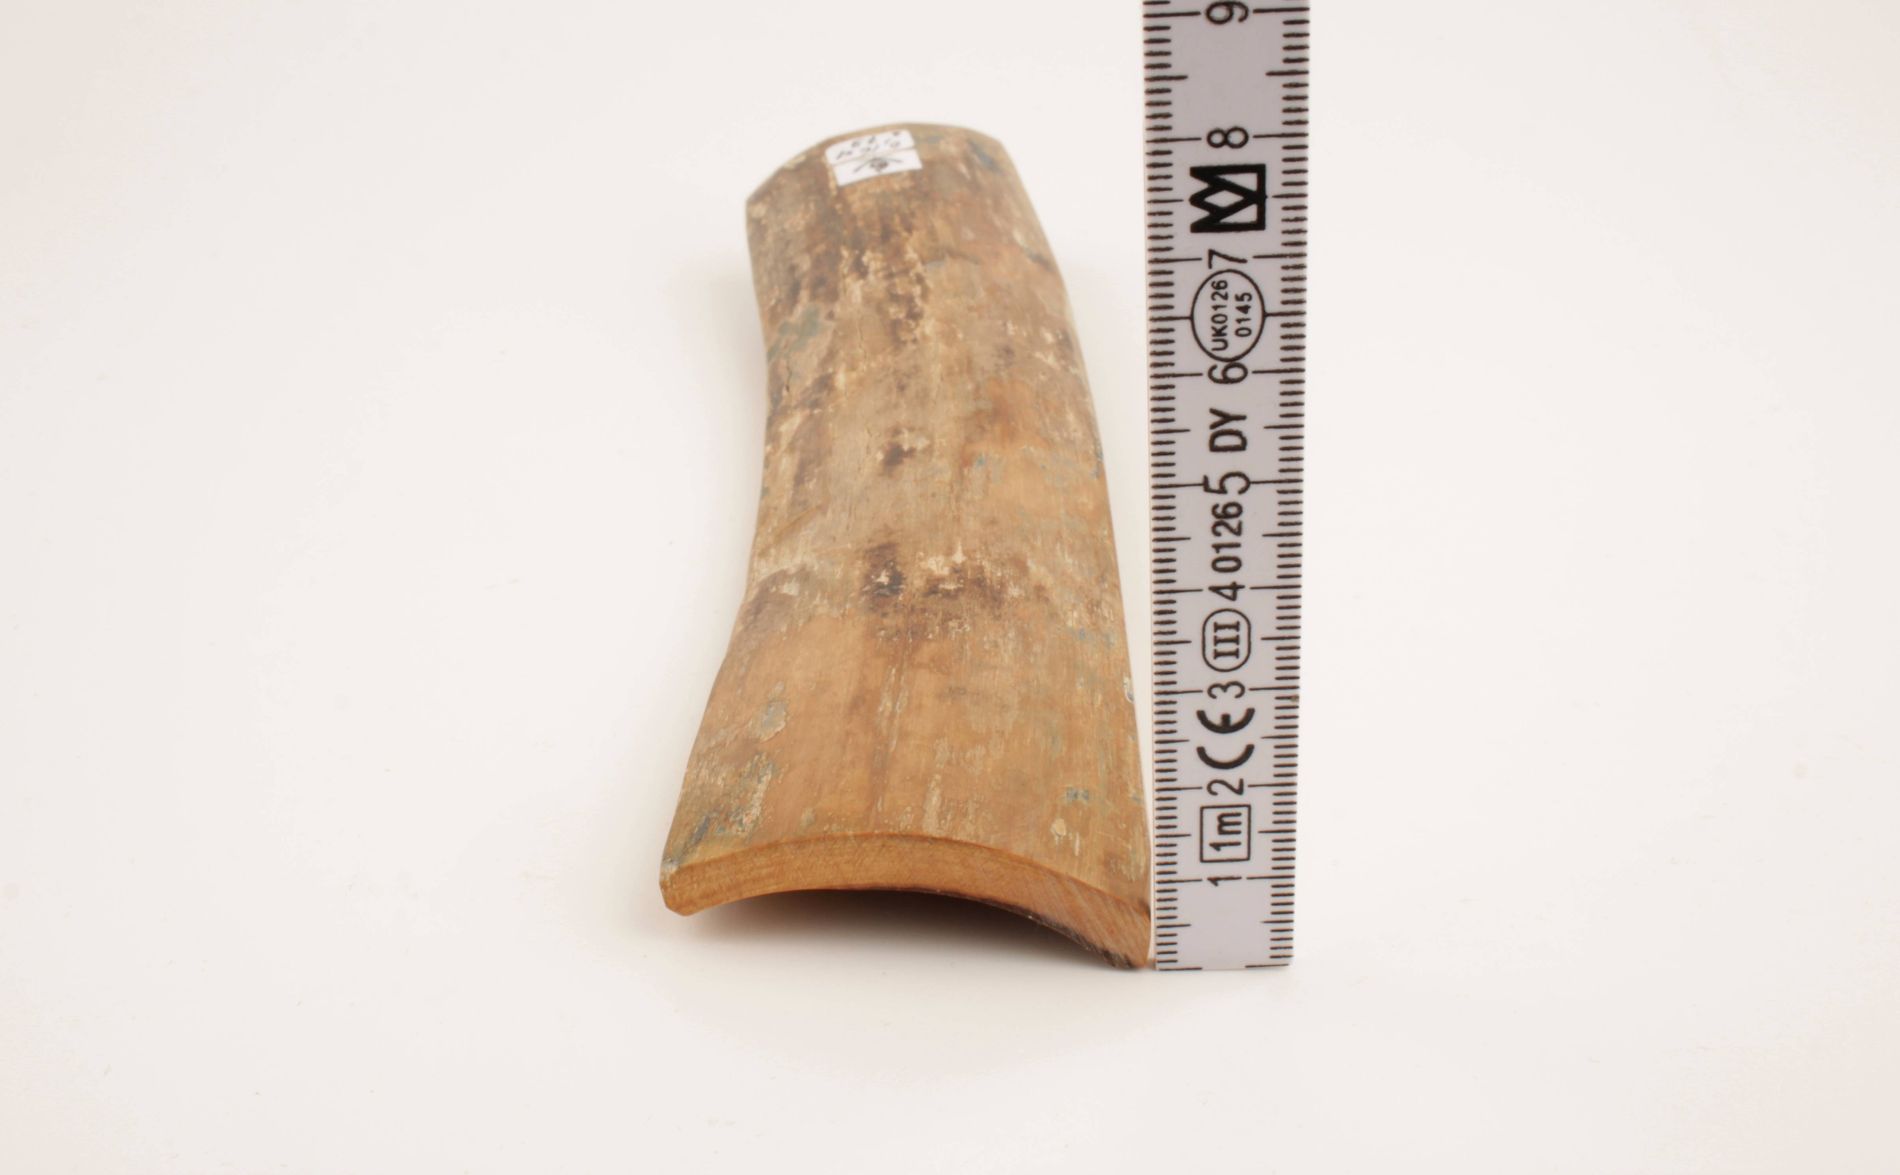 Beige-brown mammoth bark